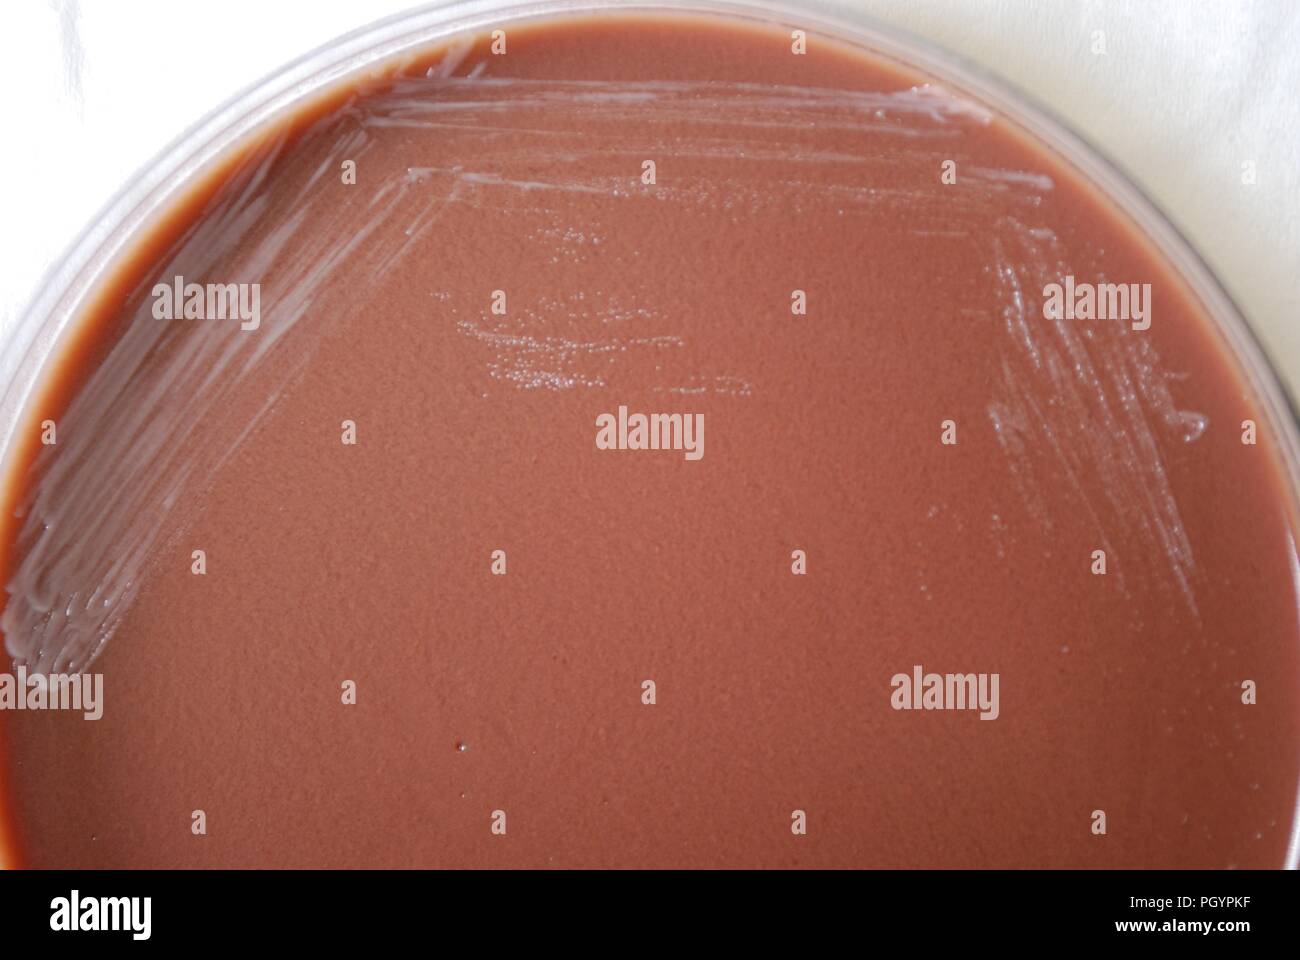 Morfologia coloniale di batteri Gram-negativi Brucella abortus batteri cresciuti 48 ore su un terreno di agar cioccolato, 2010. Immagine cortesia di centri per il controllo delle malattie (CDC) / Dr Todd Parker, Audra Marsh. () Foto Stock